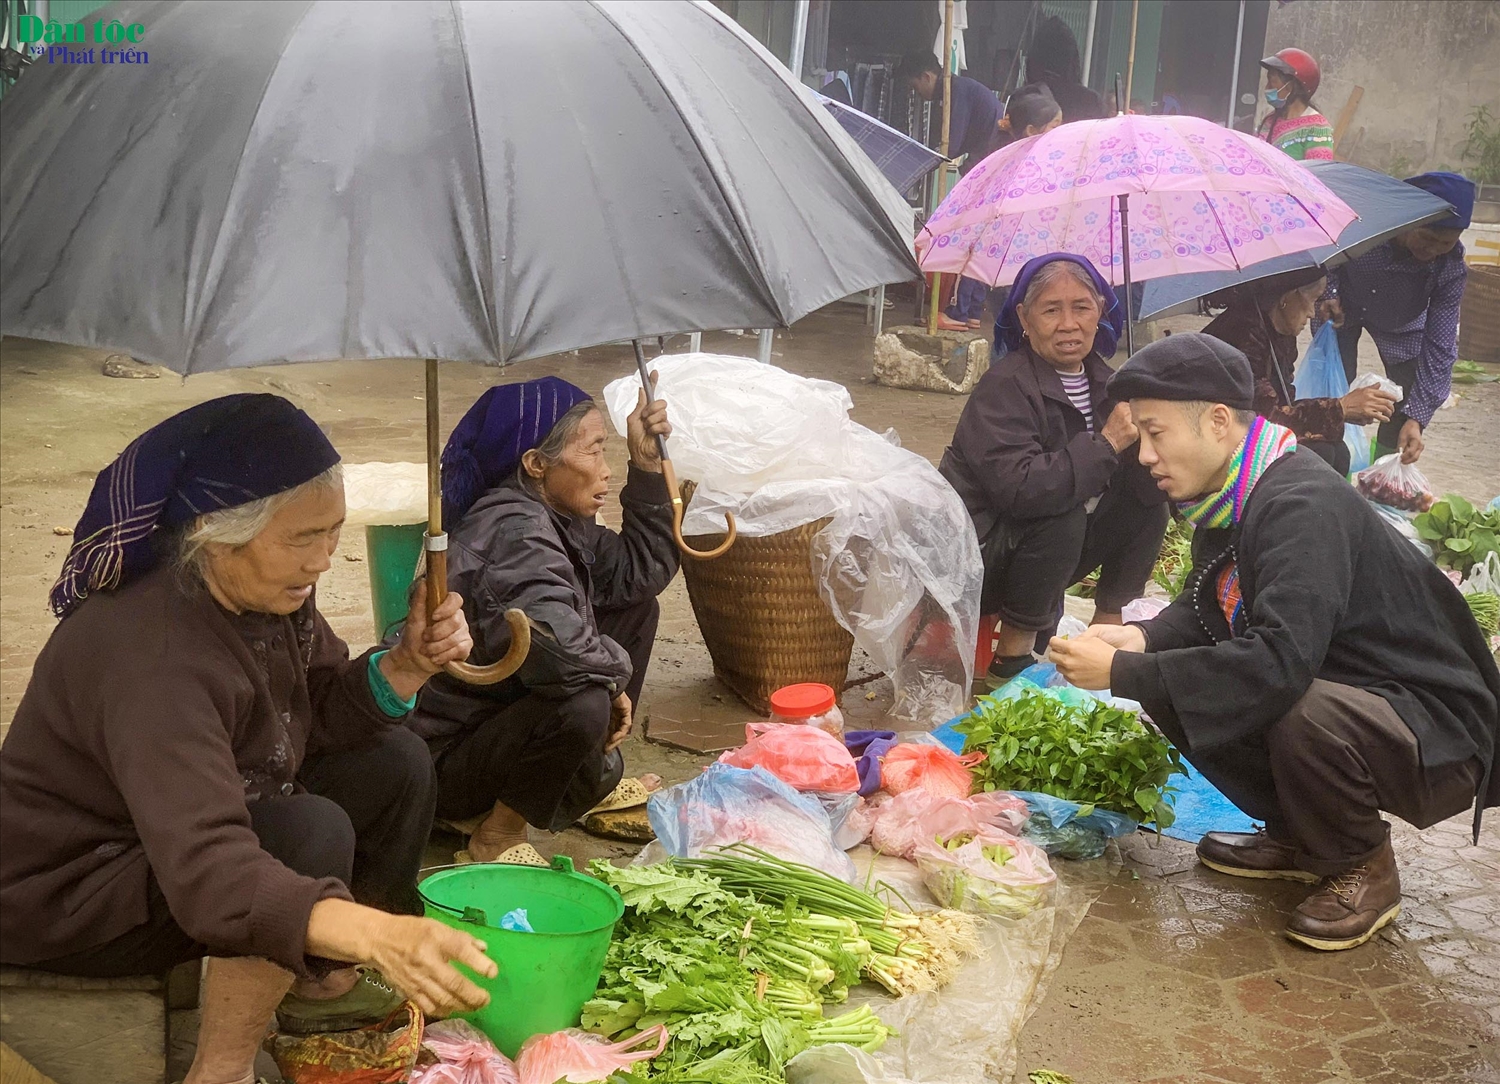 Đây là phiên chợ rực rỡ sắc màu các dân tộc tại huyện Bát Xát. Nhiều bà, nhiều chị không biết nói tiếng Việt nên giao dịch mua bán diễn ra thường bằng ký hiệu, hoặc nhờ người biết tiếng để phiên dịch